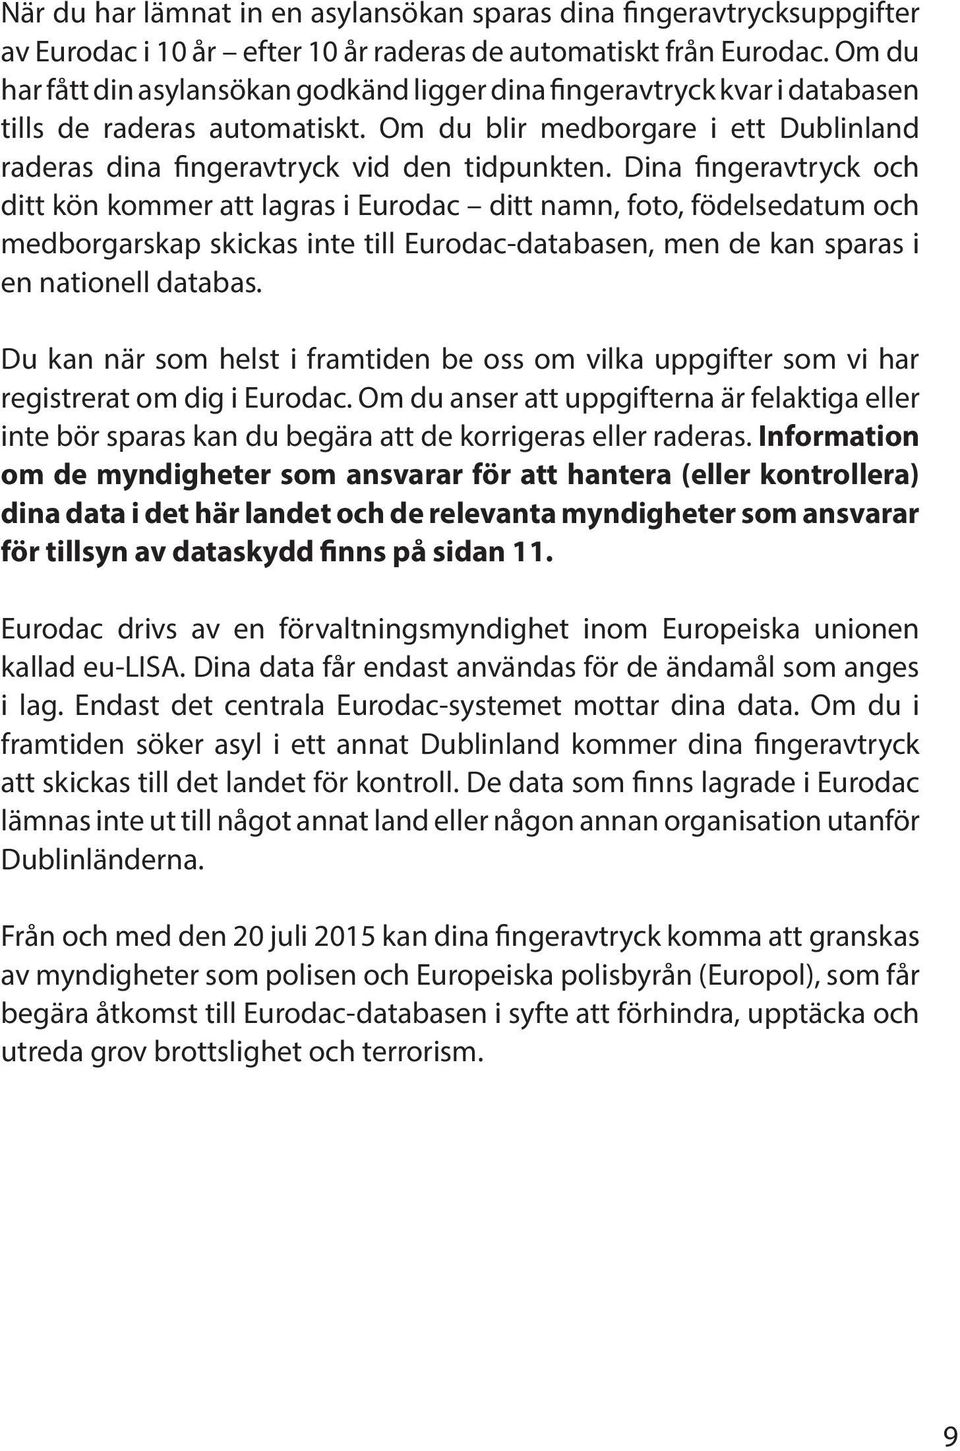 Dina fingeravtryck och ditt kön kommer att lagras i Eurodac ditt namn, foto, födelsedatum och medborgarskap skickas inte till Eurodac-databasen, men de kan sparas i en nationell databas.